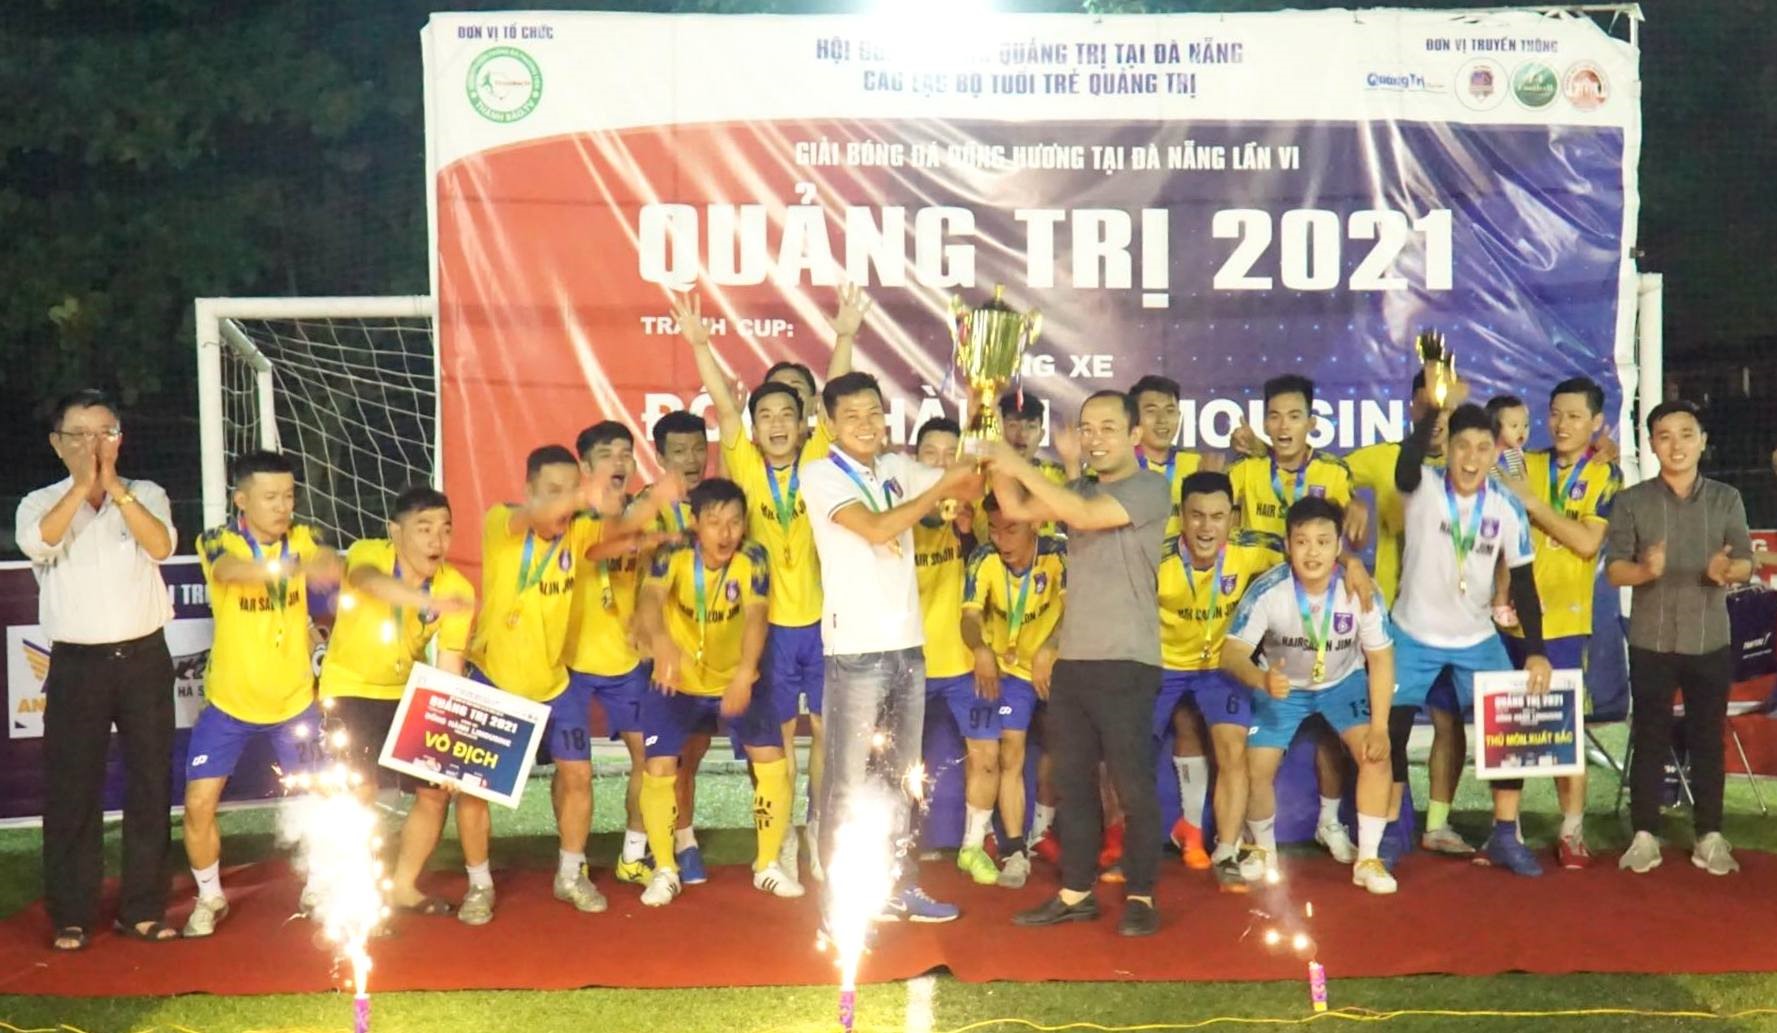 Cát trắng FC đoạt Cup Vô địch Giải Bóng đá đồng hương Quảng Trị tại TP.Đà Nẵng lần thứ VI-2021 tranh Cup Đồng Hành Limousine - Ảnh: M.Đ